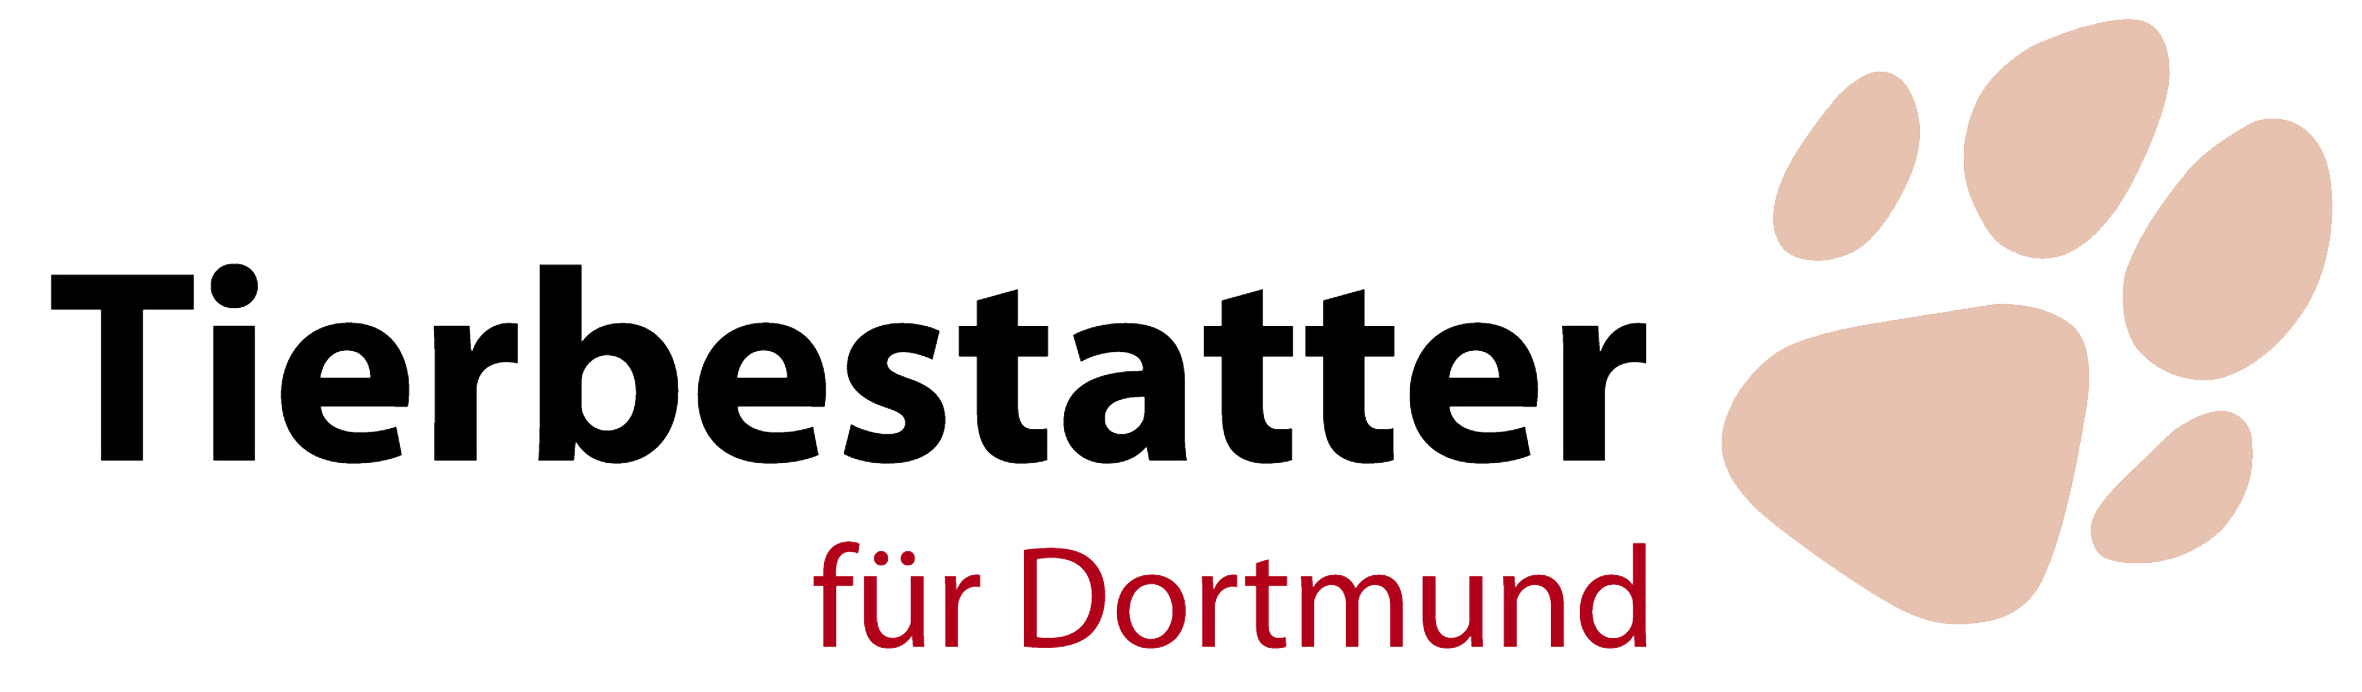 friedhorfsgaertnerei-dortmund-tierbestattung-logo